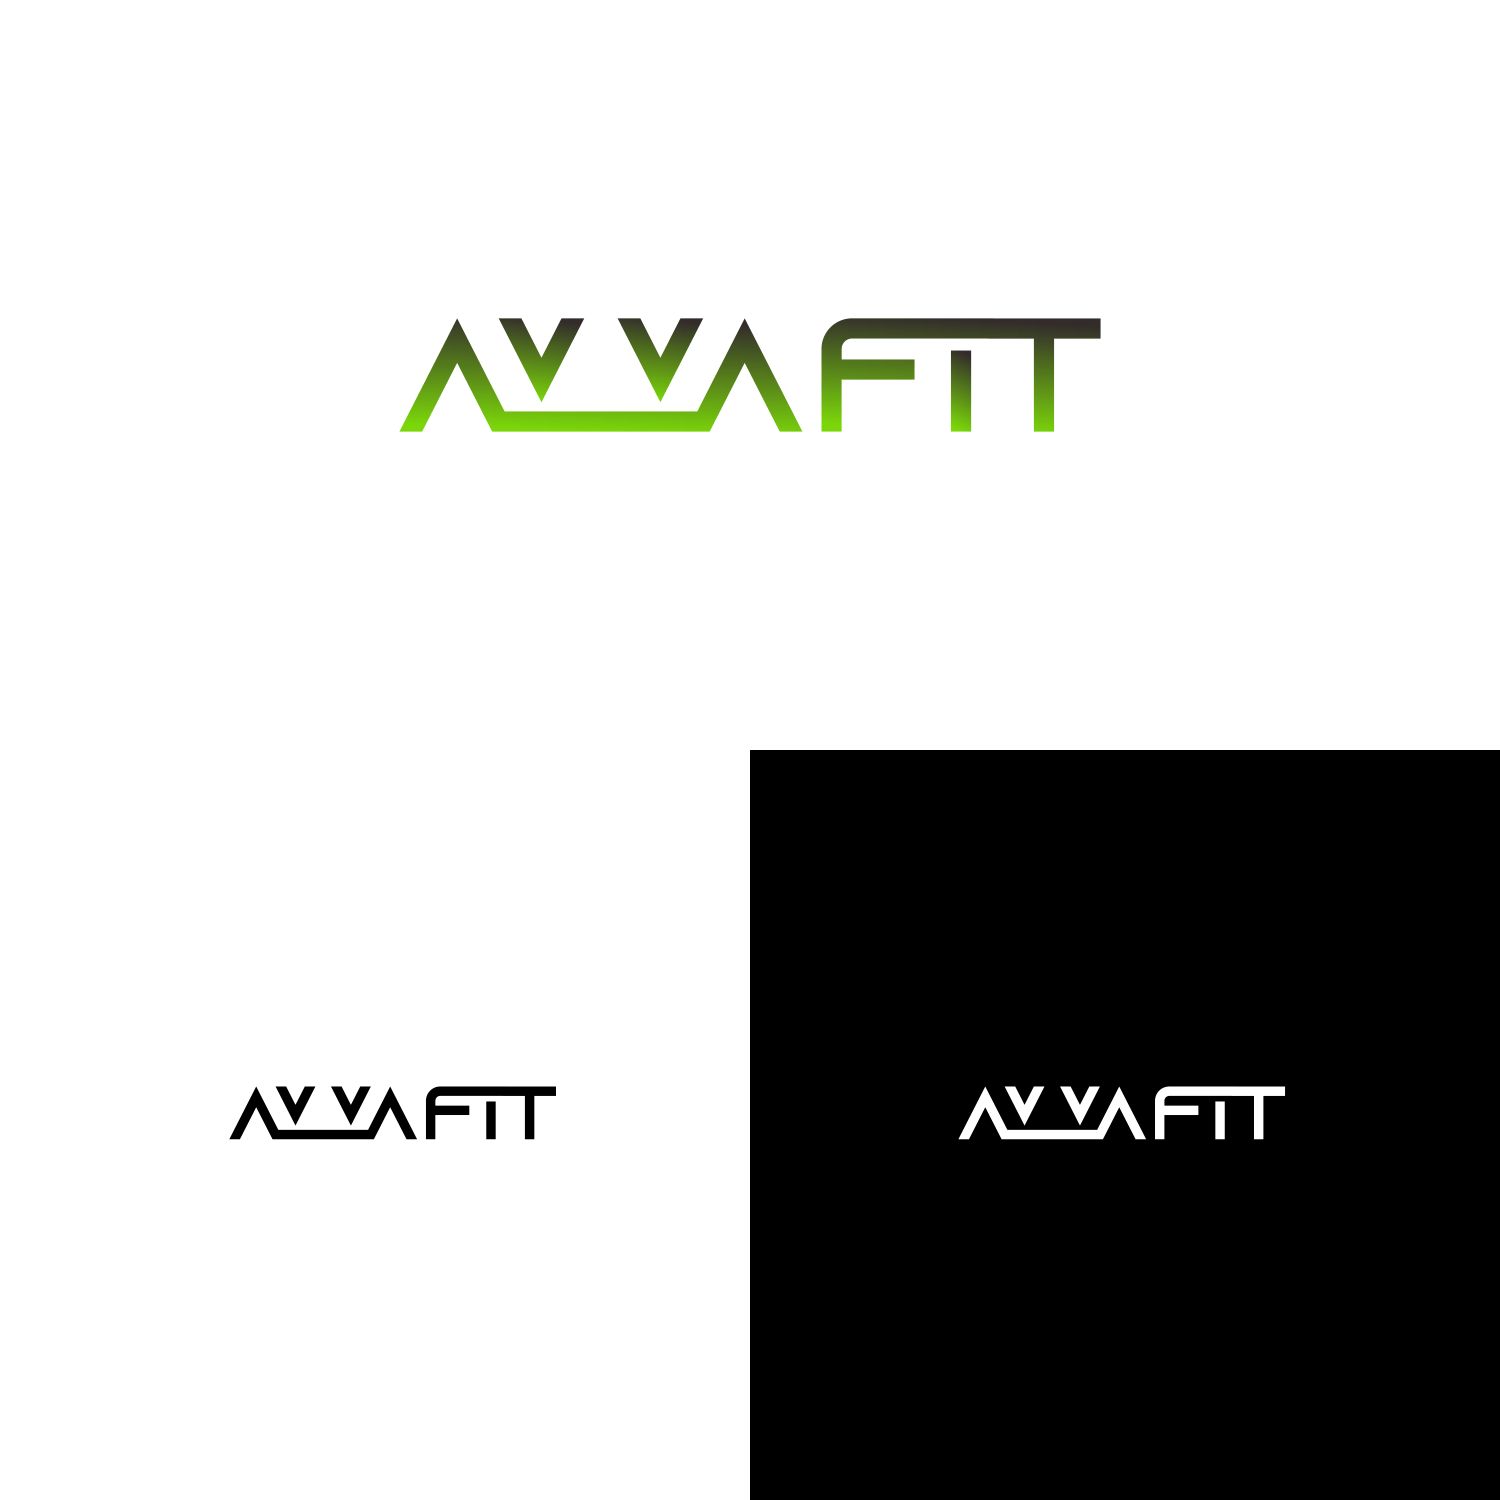 Avva Logo - Logo Design for AVVA FIT by modalbawang | Design #20581118